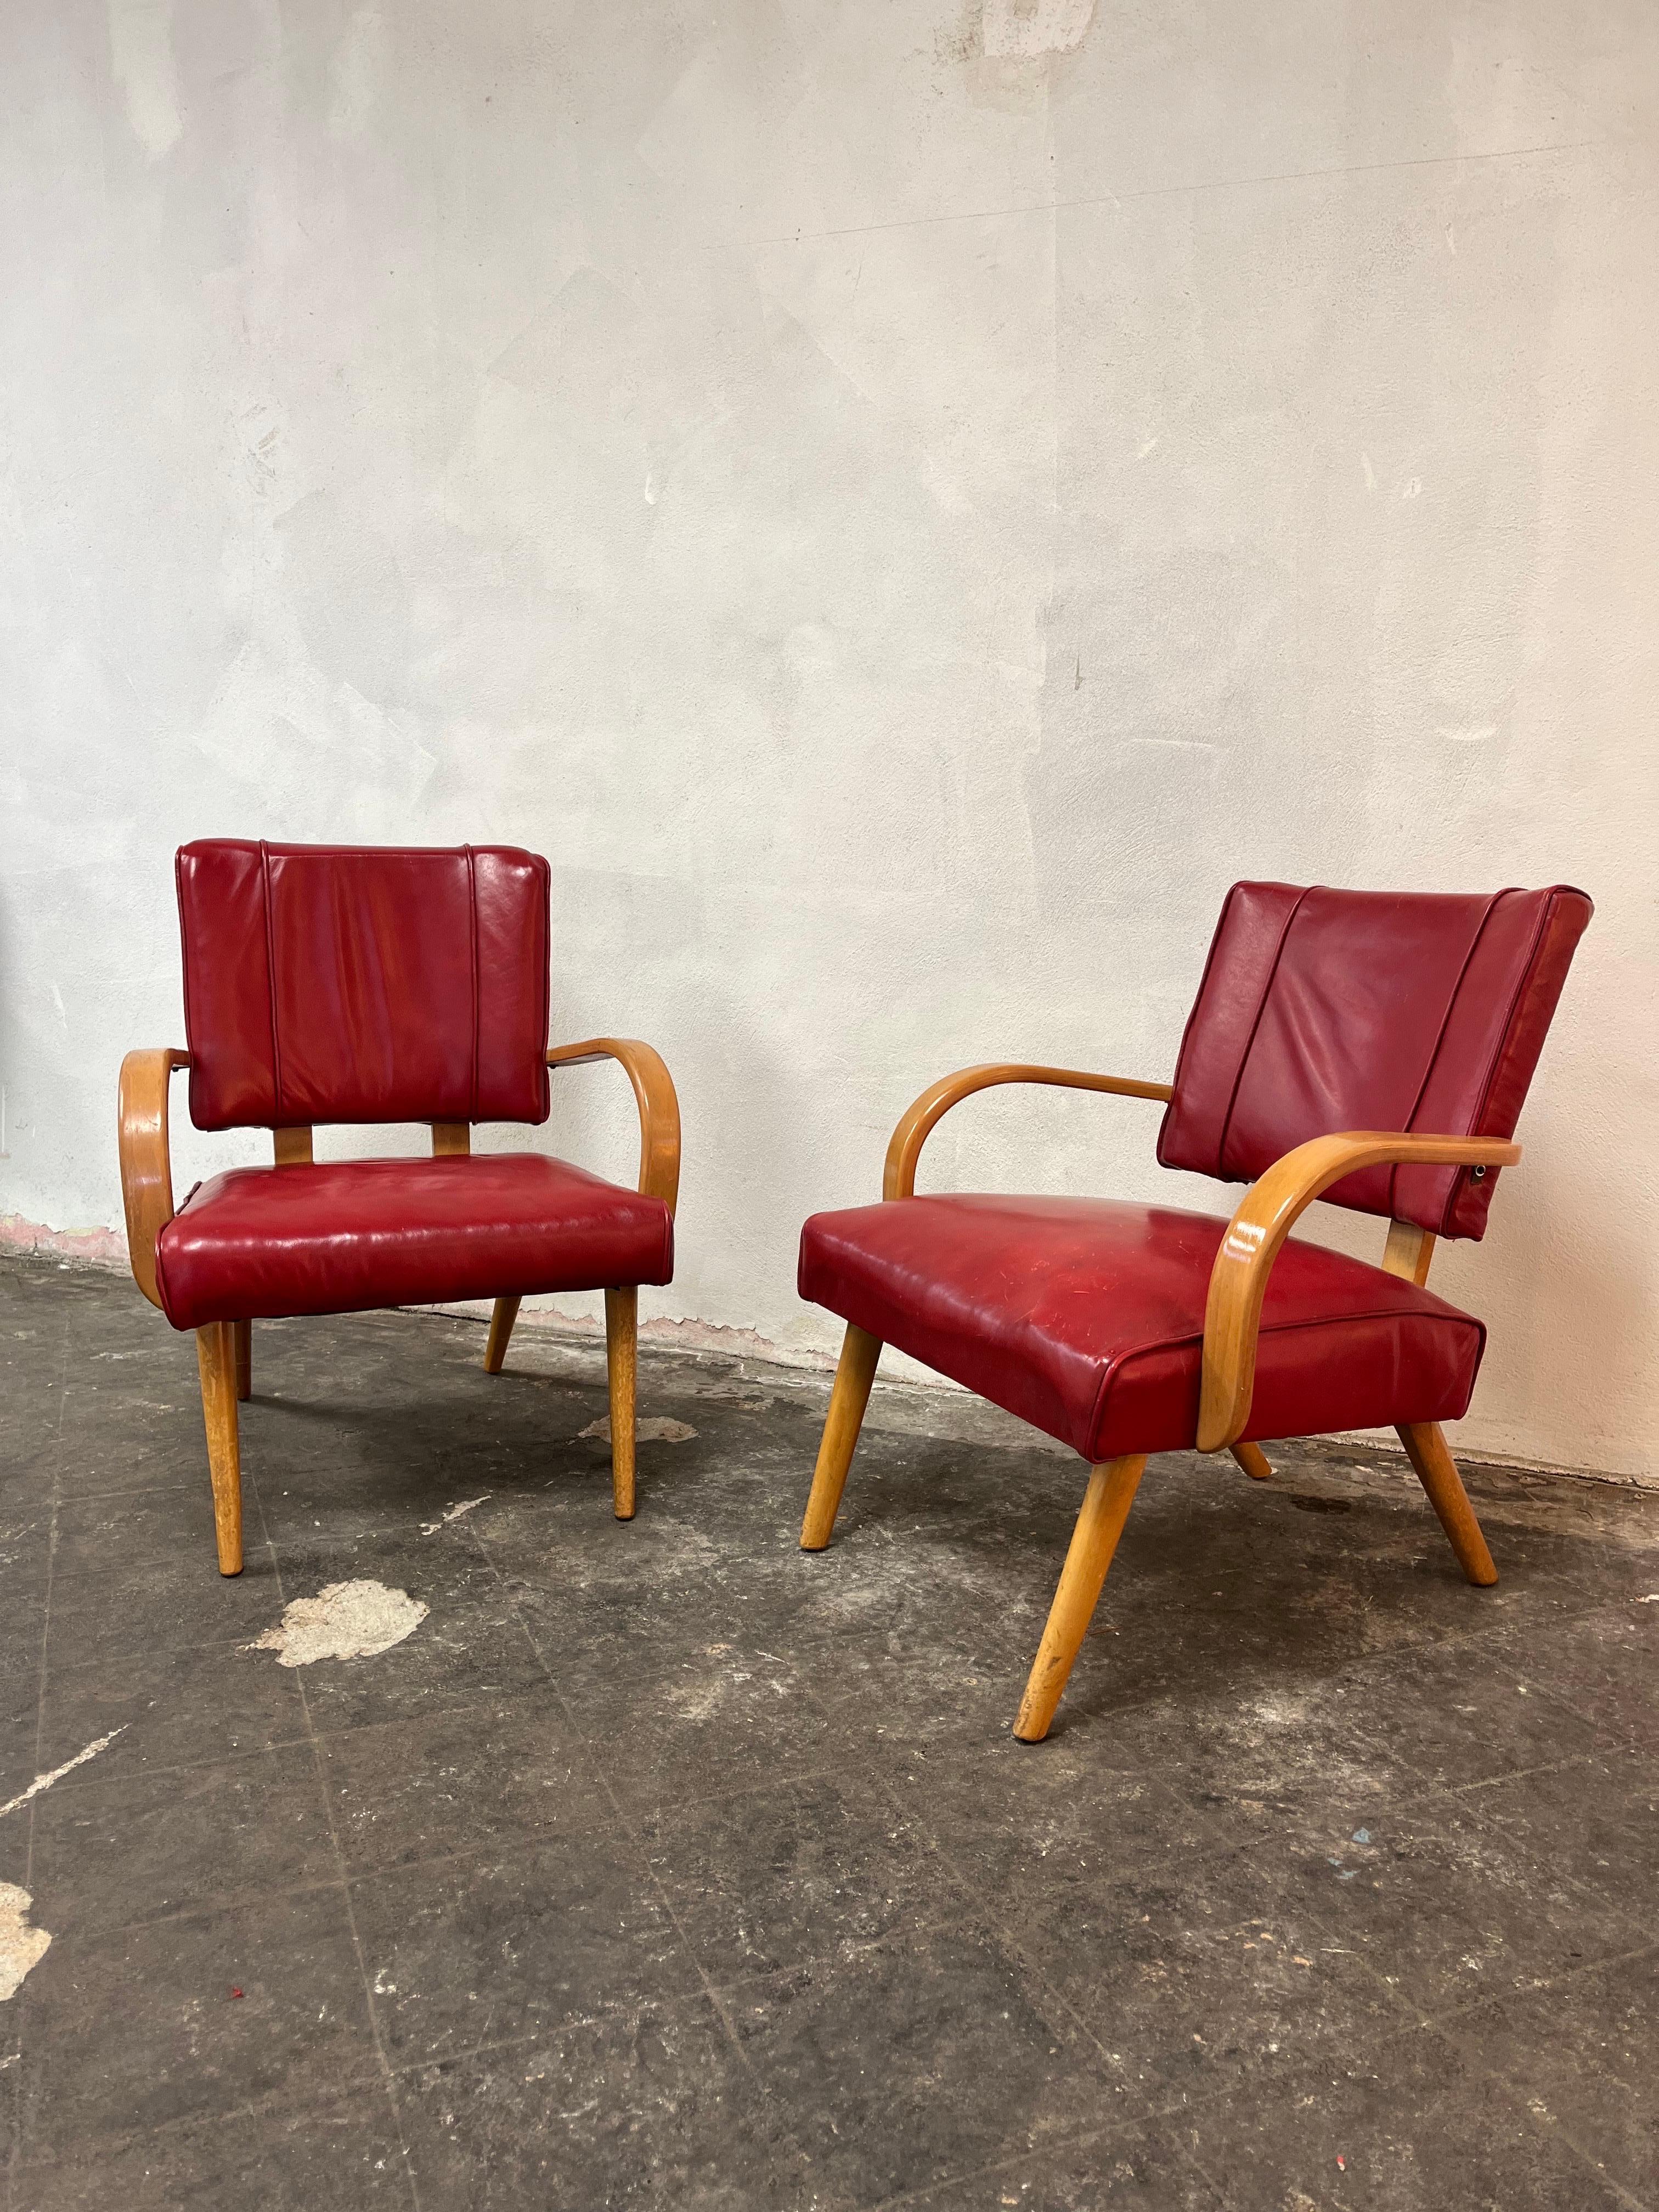 Superbes fauteuils rétro en bois courbé dans le style de Thonet et Heywood Wakefield. Belle assise en cuir rouge avec des accoudoirs en bois courbé et des pieds joliment évasés. Profil bas grâce au design A.Profiles.
En bordure de route vers